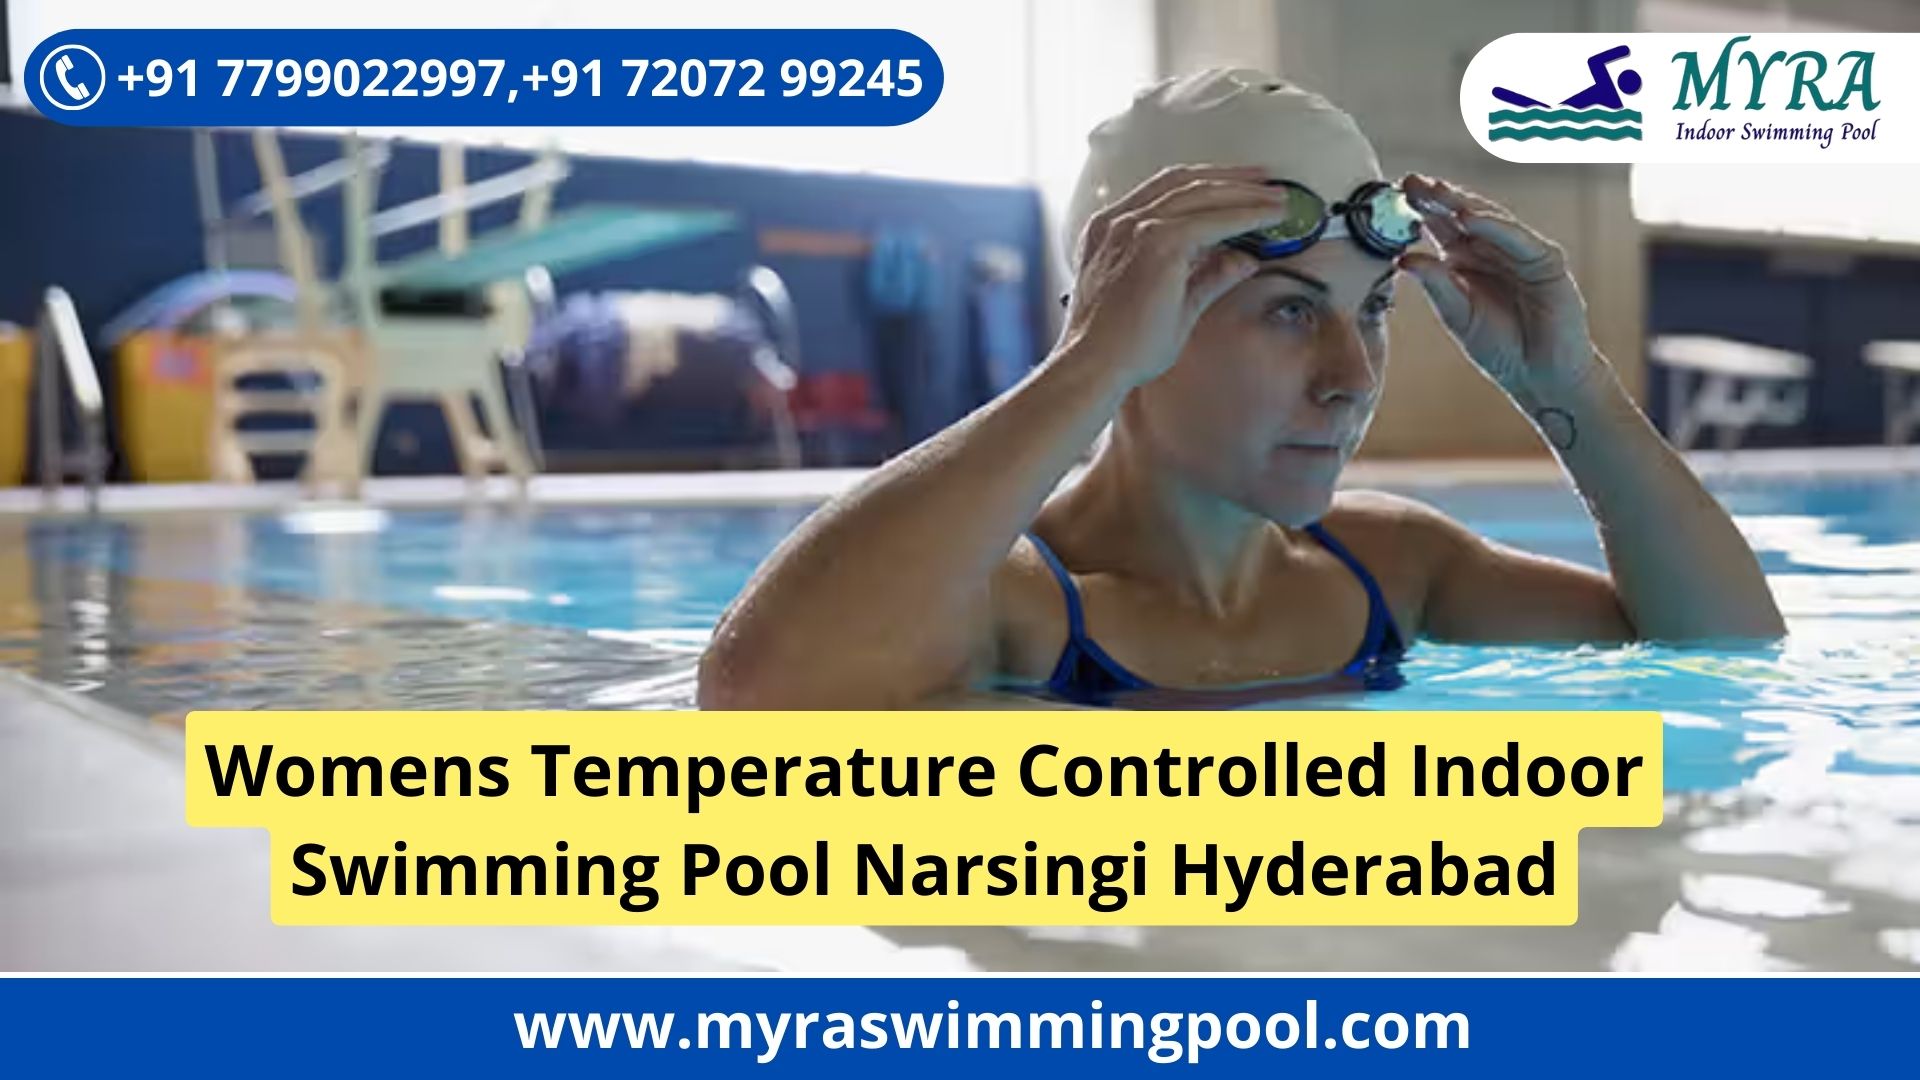 Women's Temperature Controlled Indoor Swimming Pool in Narsingi